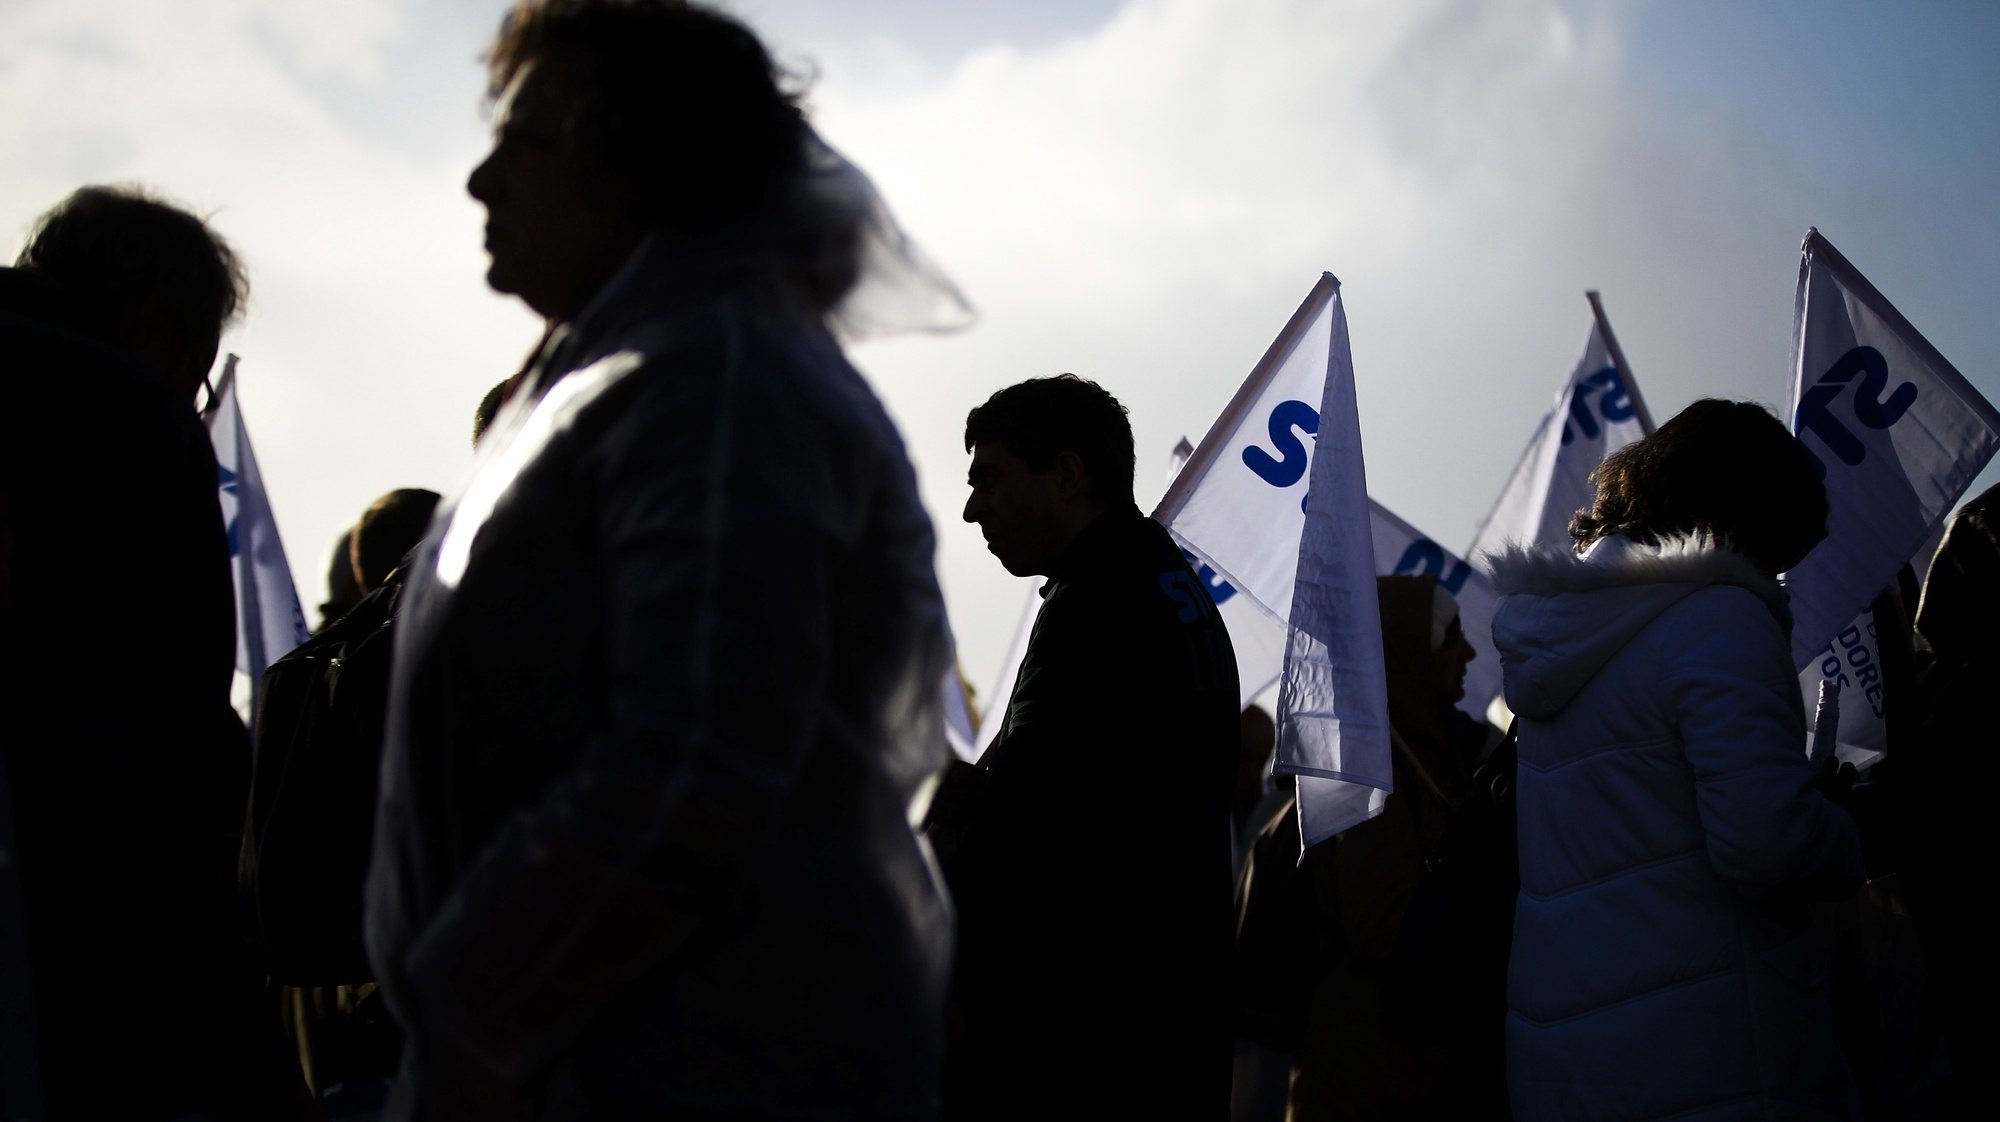 Trabalhadores da Autoridade Tributária - Serviços de Finanças e Alfândegas em greve participam na concentração contra às medidas do governo no setor, junto ao Ministério das Finanças, em Lisboa, 19 de dezembro de 2013. MÁRIO CRUZ/LUSA